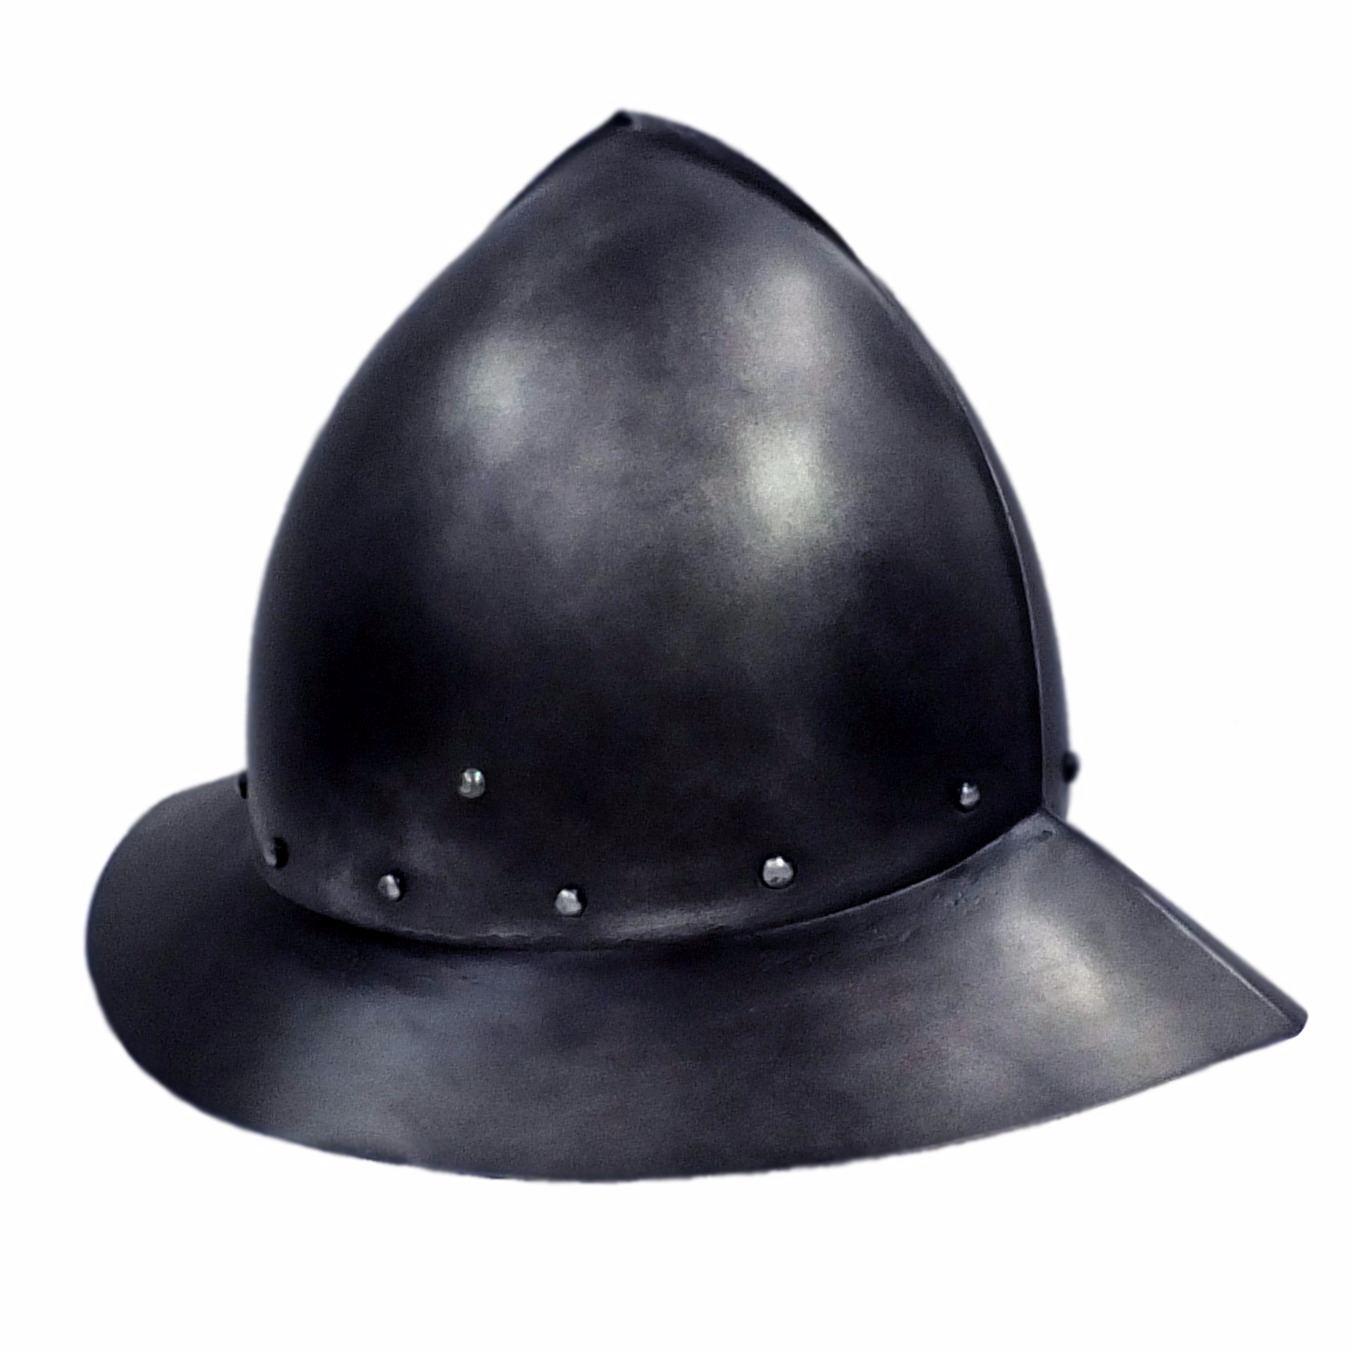 Spanish kettle hat larp helmet